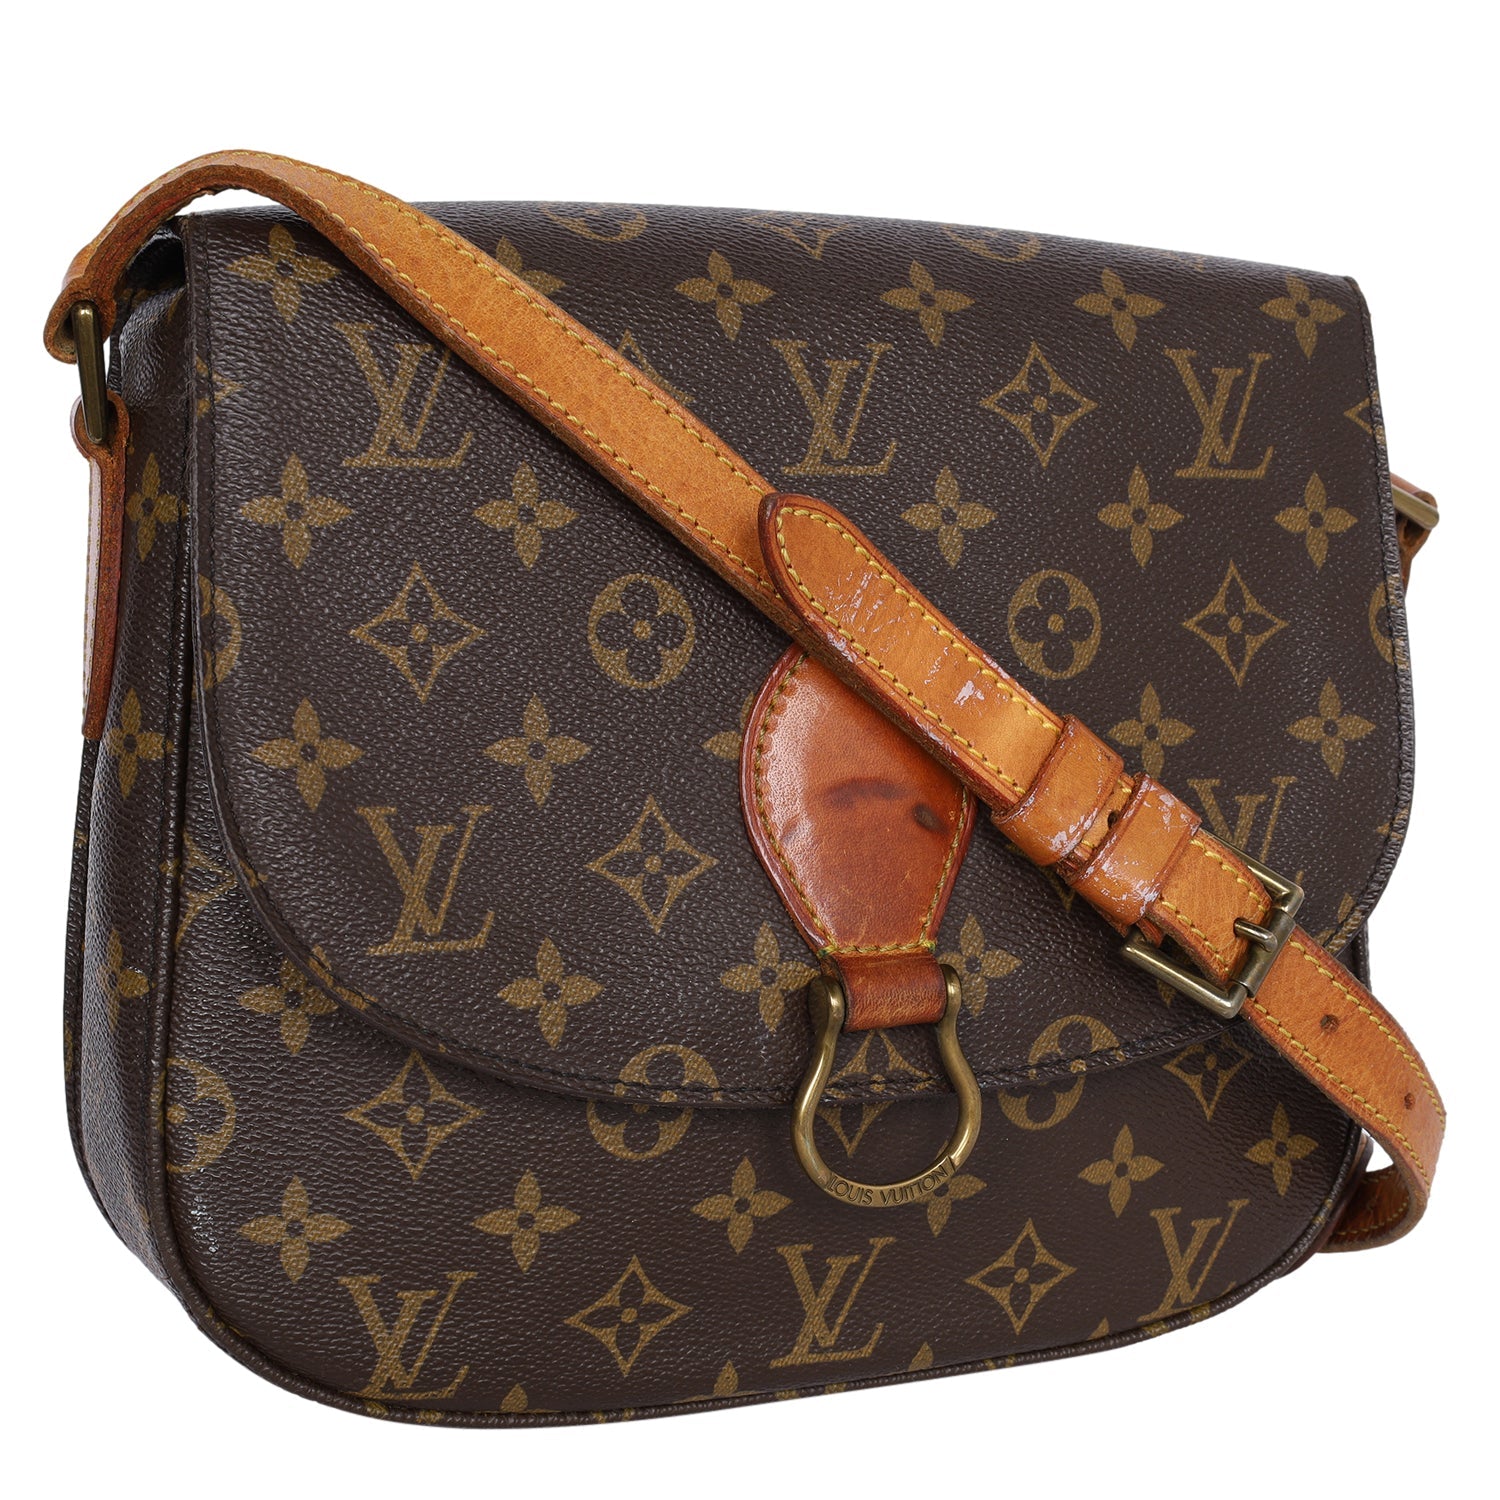 Louis Vuitton, Bags, Epi Leather Saint Cloud Pm Black Crossoss Body Bag